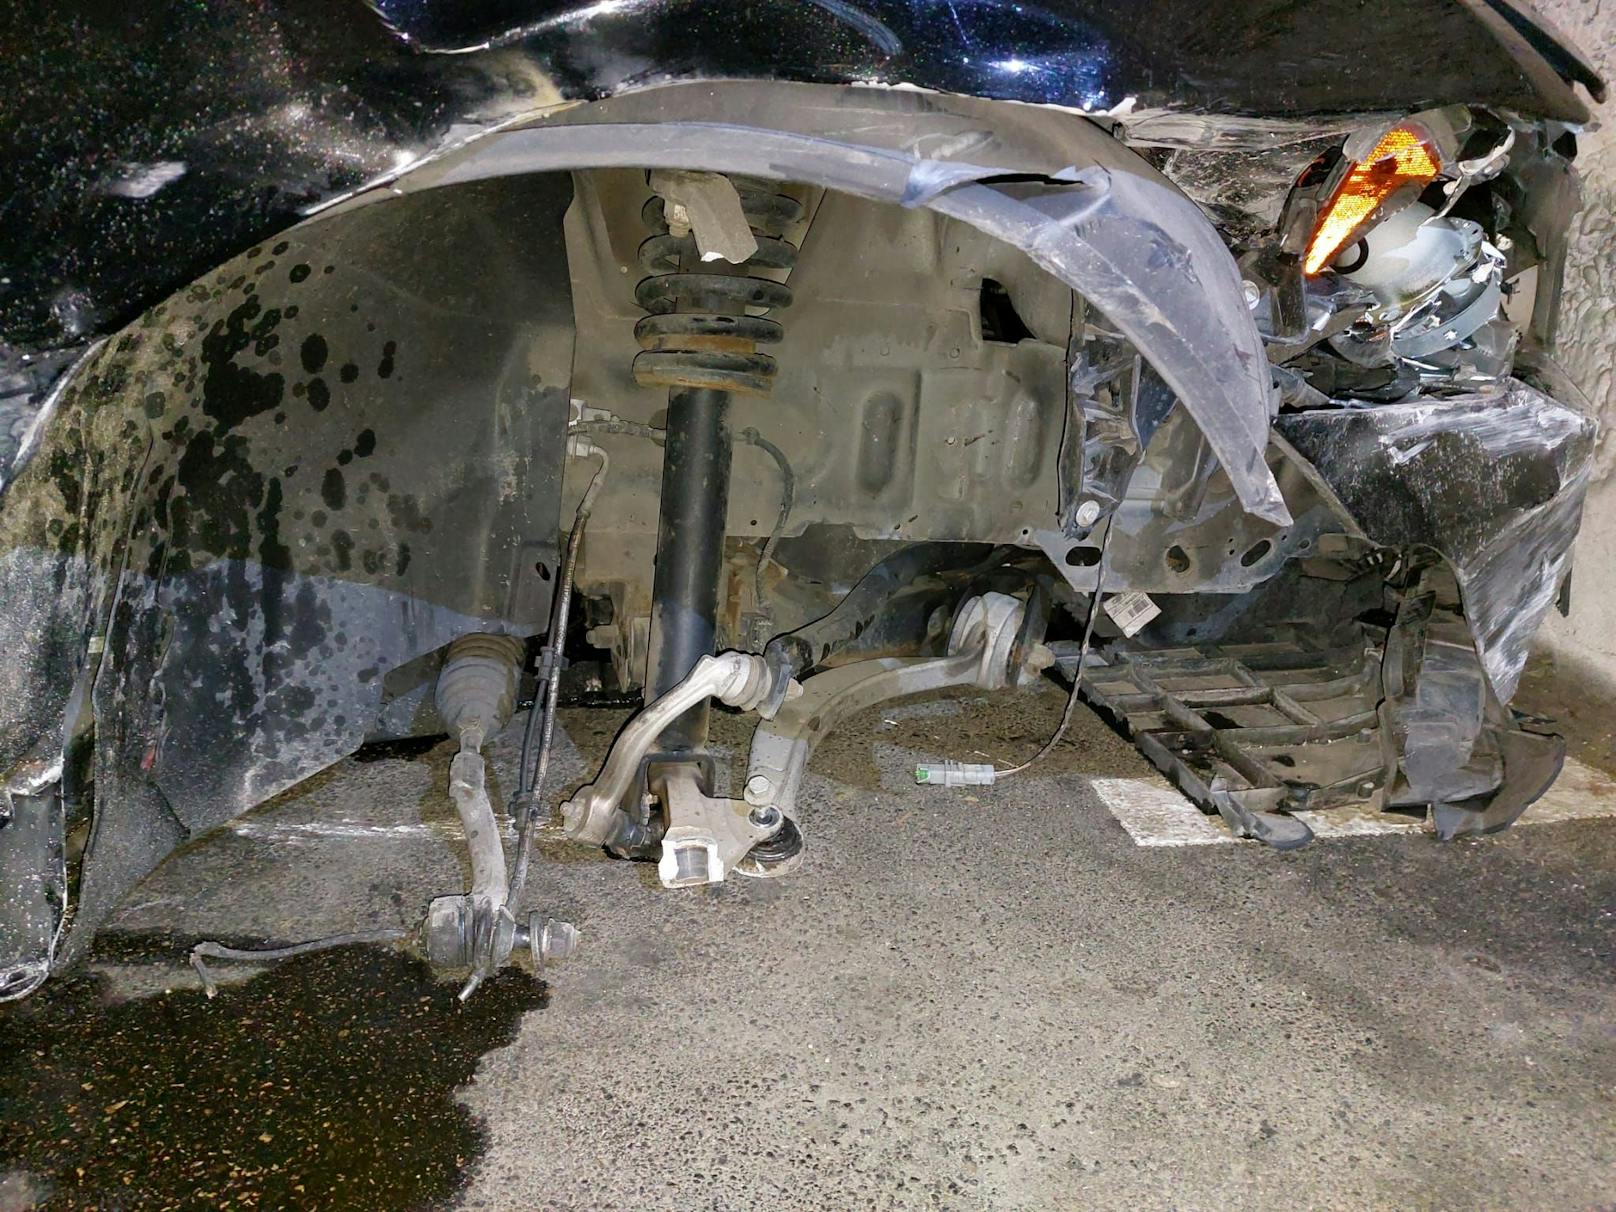 Der Pkw-Lenker stellte das demolierte Fahrzeug in der Garage ab